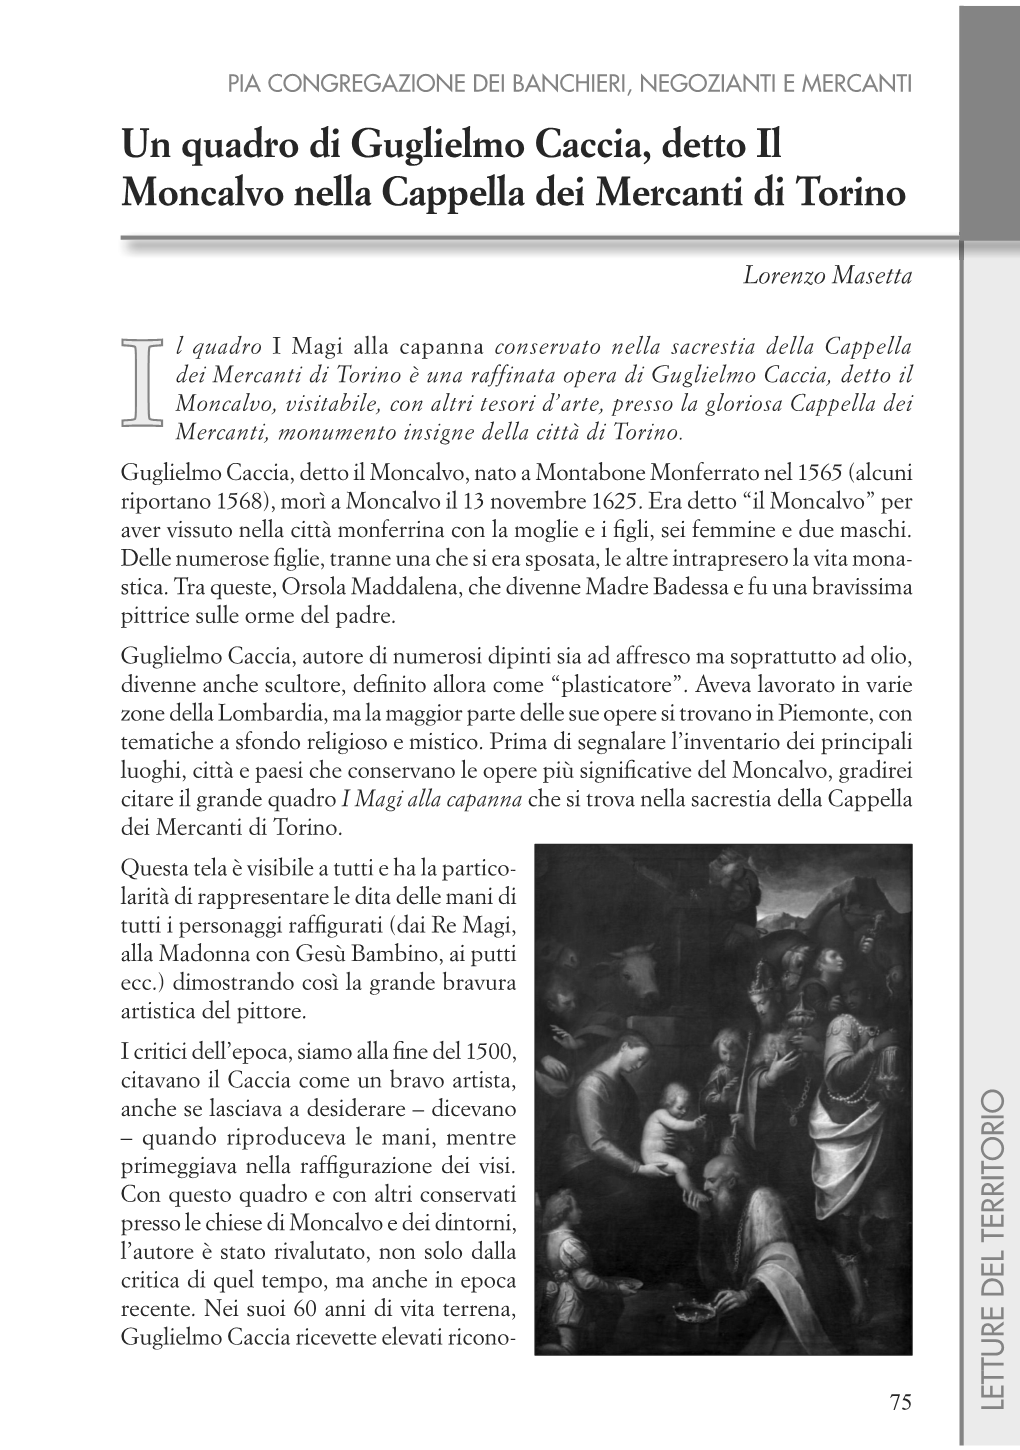 Un Quadro Di Guglielmo Caccia, Detto Il Moncalvo Nella Cappella Dei Mercanti Di Torino